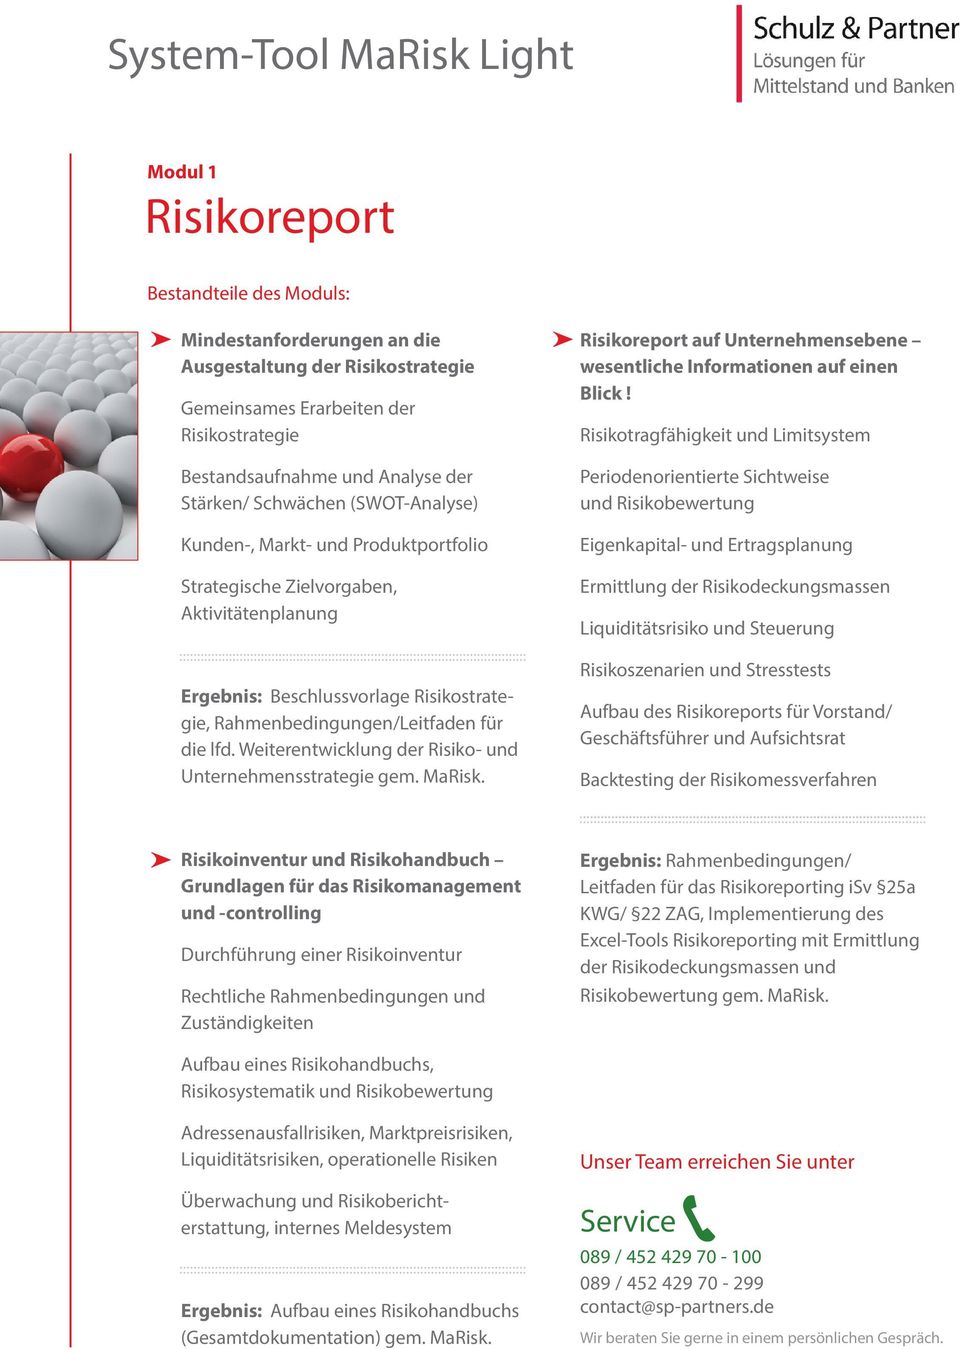 Weiterentwicklung der Risiko- und Unternehmensstrategie gem. MaRisk. Risikoreport auf Unternehmensebene wesentliche Informationen auf einen Blick!